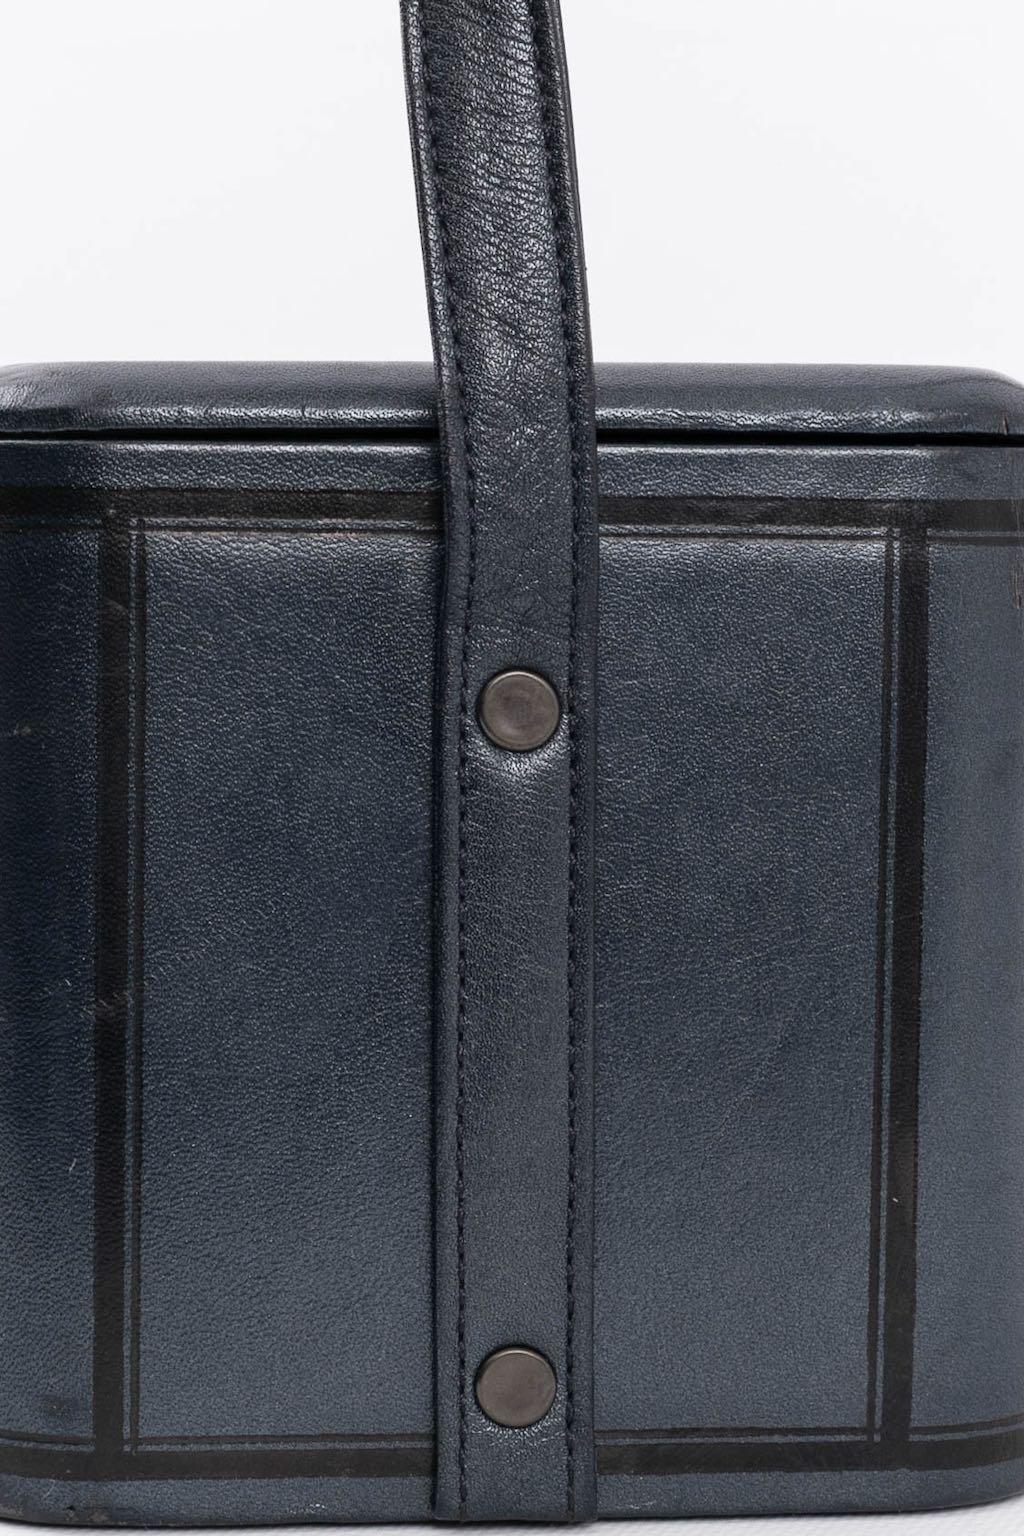 Chantal Thomass, Tasche „Box“-Tasche, 1986 im Angebot 3